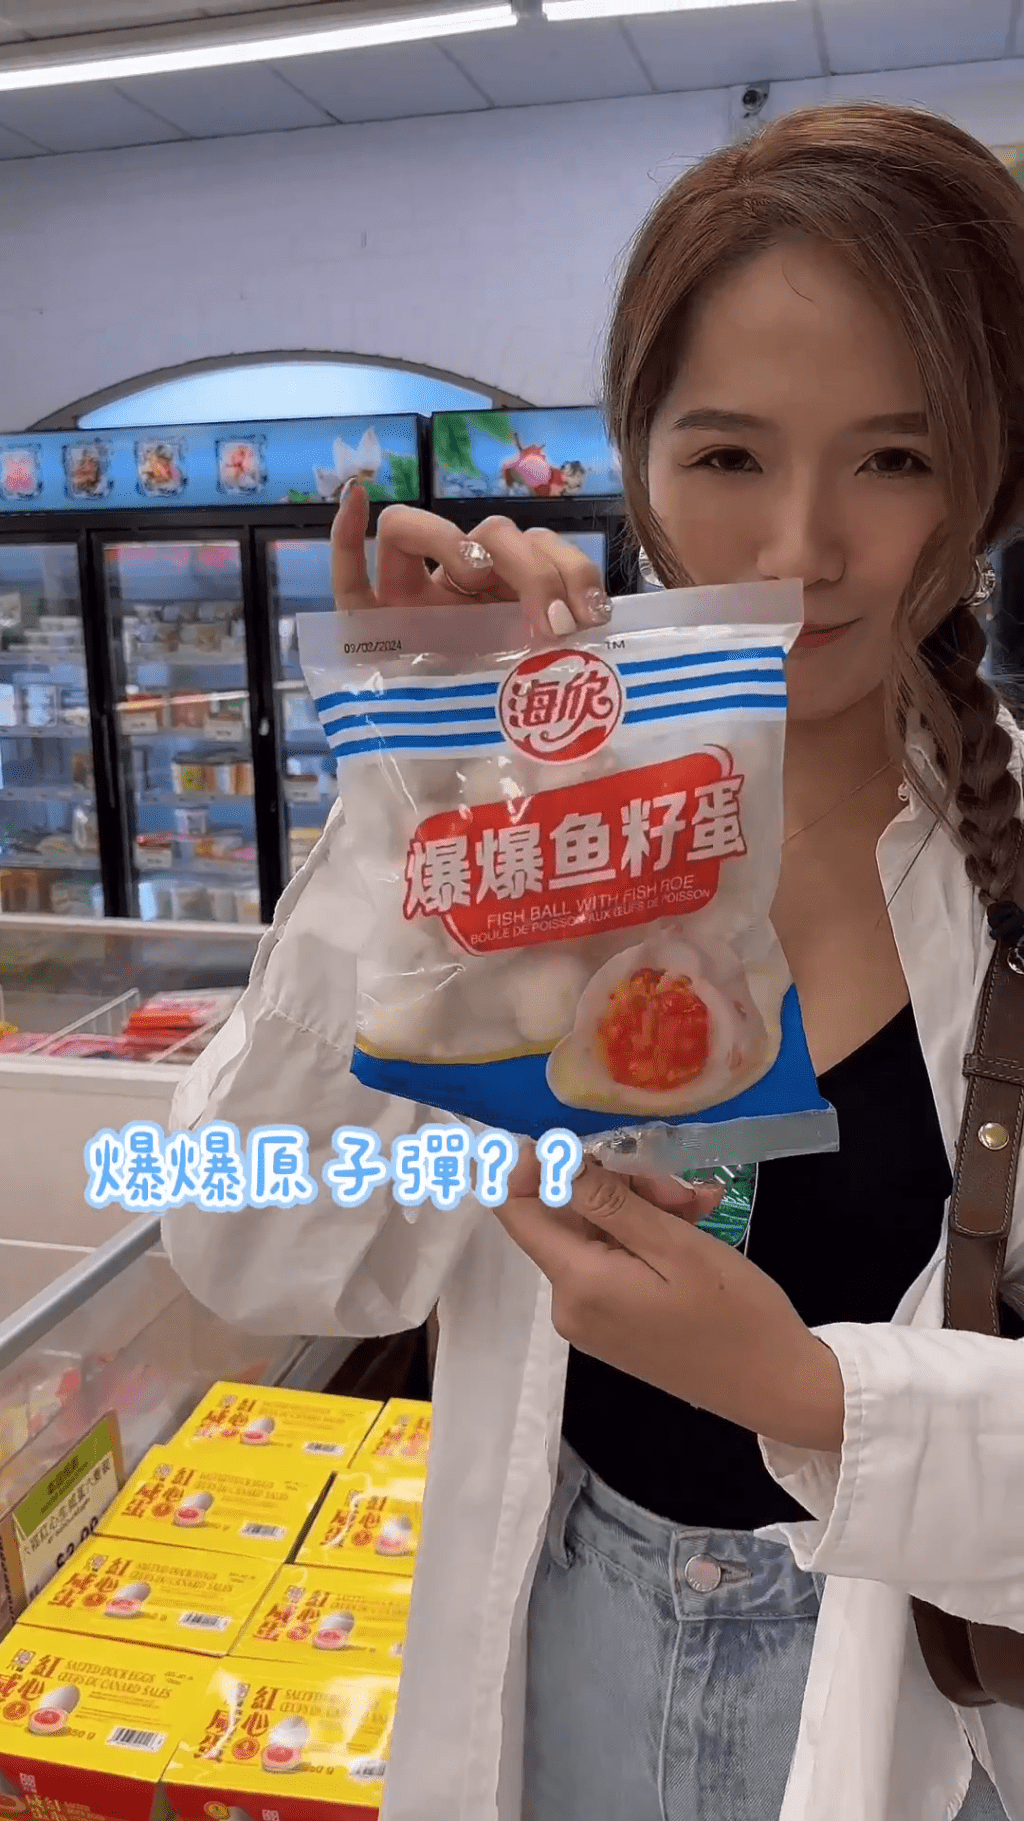 梁敏巧再于IG上载一段搞笑影片，身在当地超市的她拎起多件食品，念出包装上产品名称的谐音。